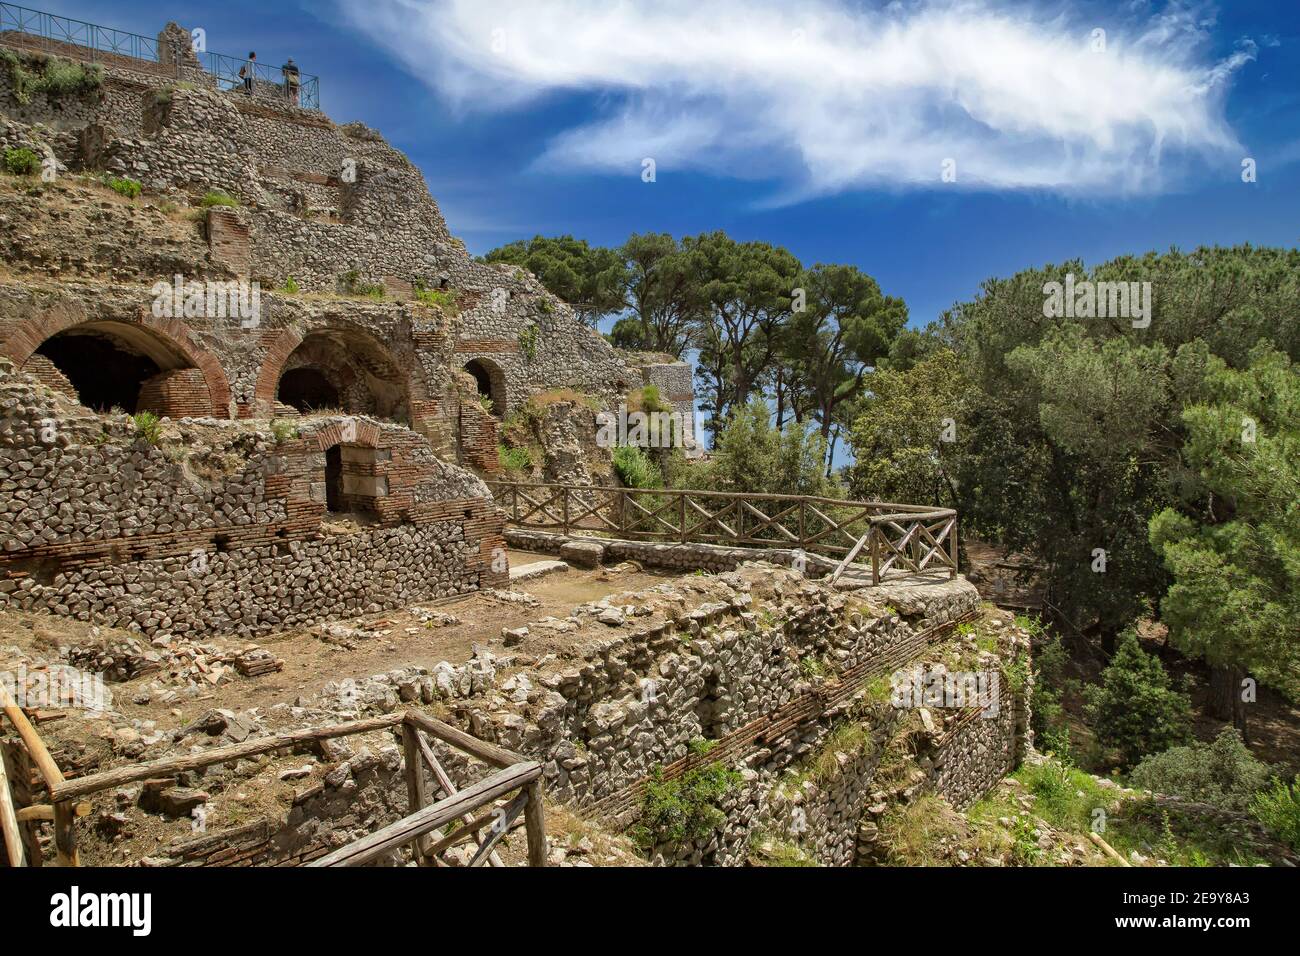 Antiguas ruinas romanas de Villa Jovis construido por el emperador Tiberio se encuentra en el borde de un alto acantilado en la isla de Capri, mar Tirreno, Italia Foto de stock